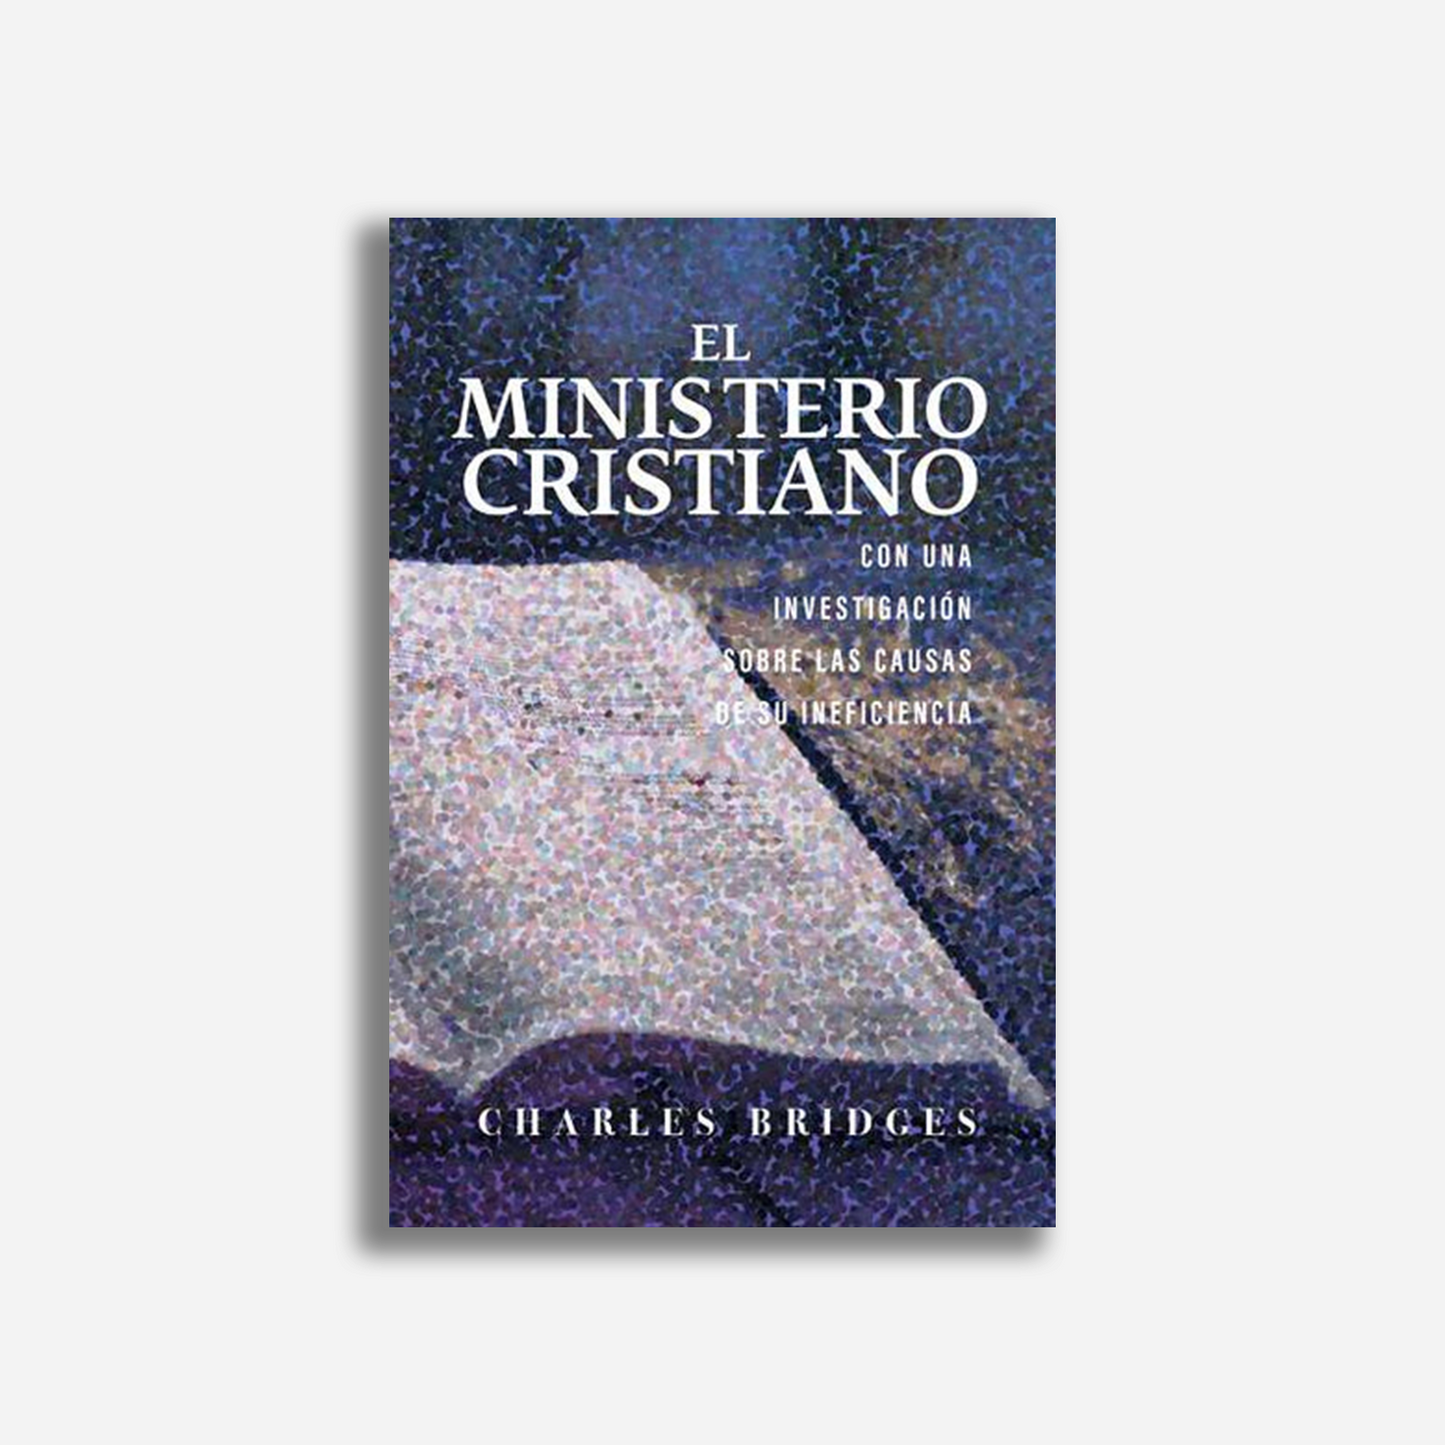 El ministerio cristiano